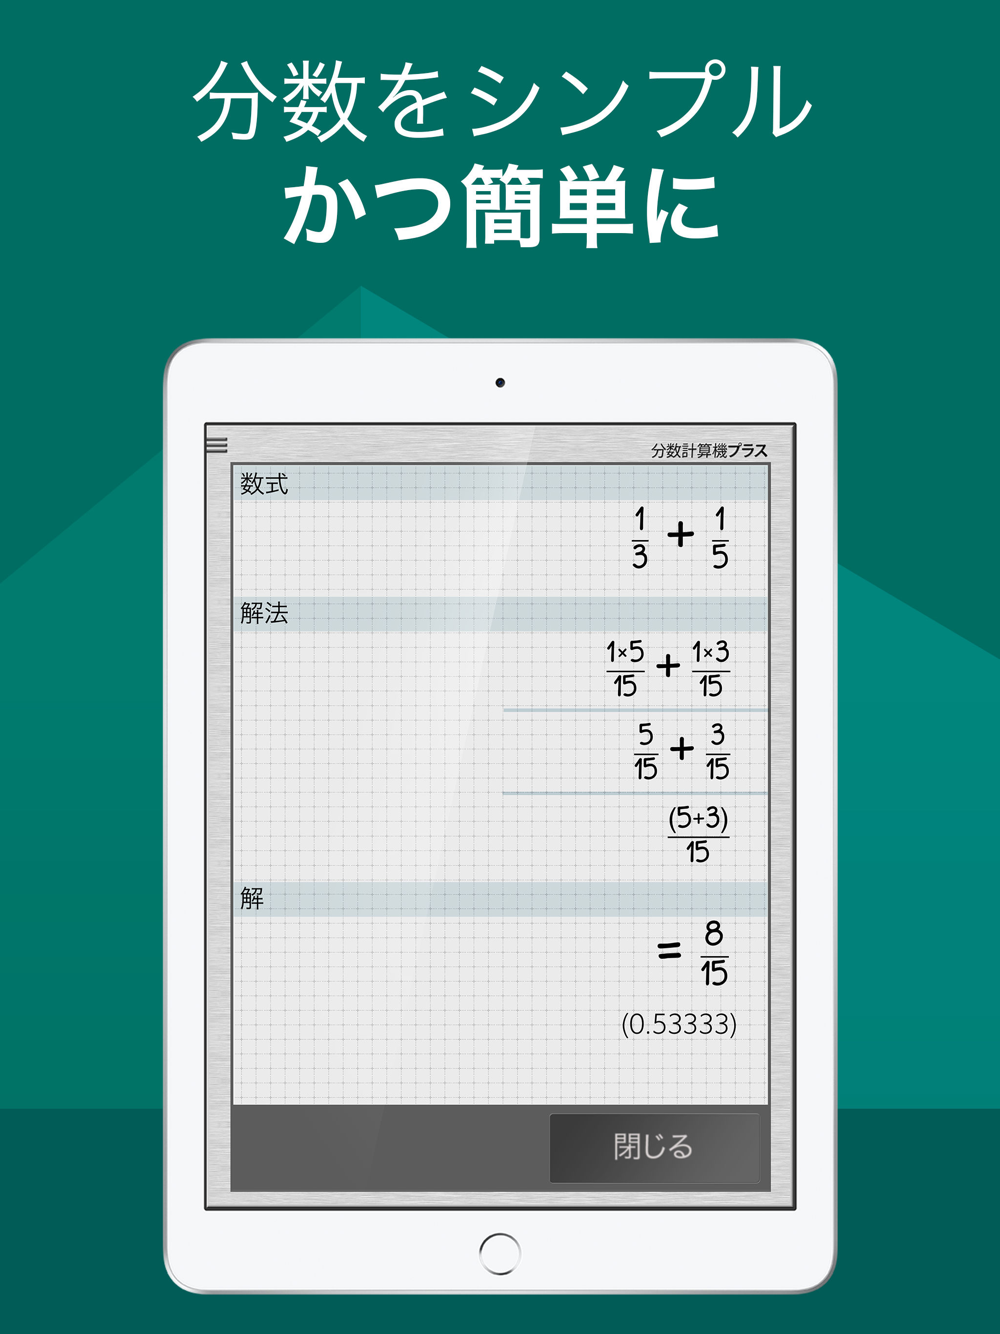 分数計算機プラス Download App For Iphone Steprimo Com